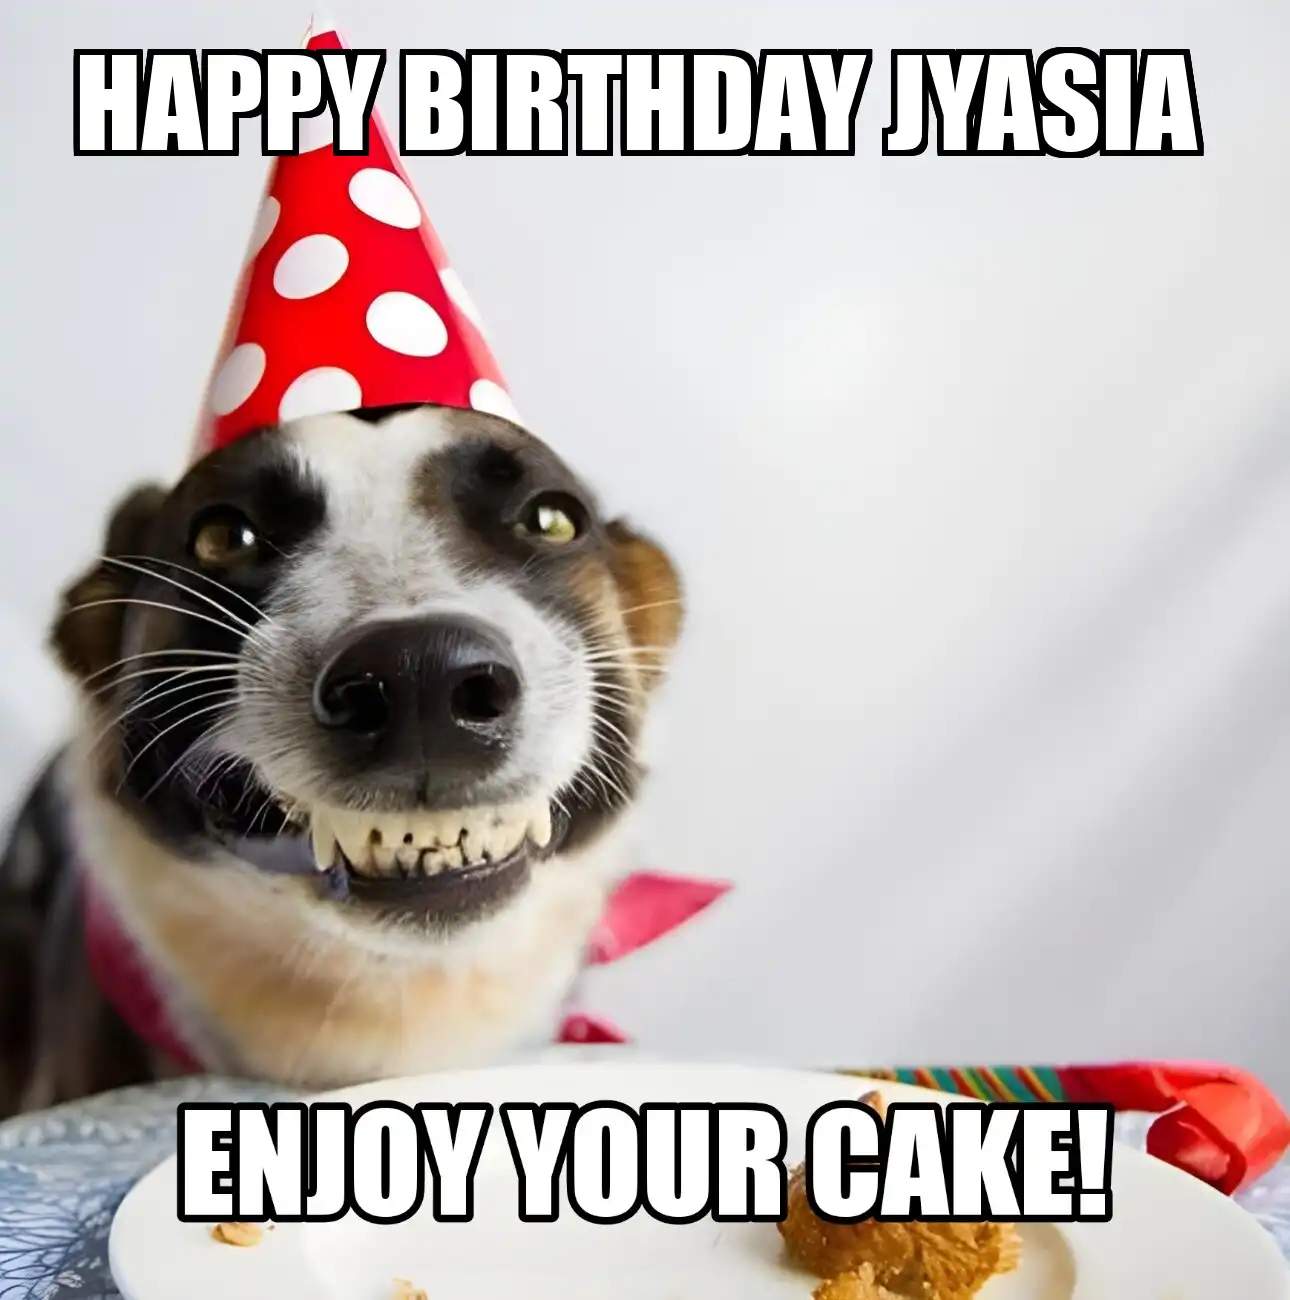 Happy Birthday Jyasia Enjoy Your Cake Dog Meme